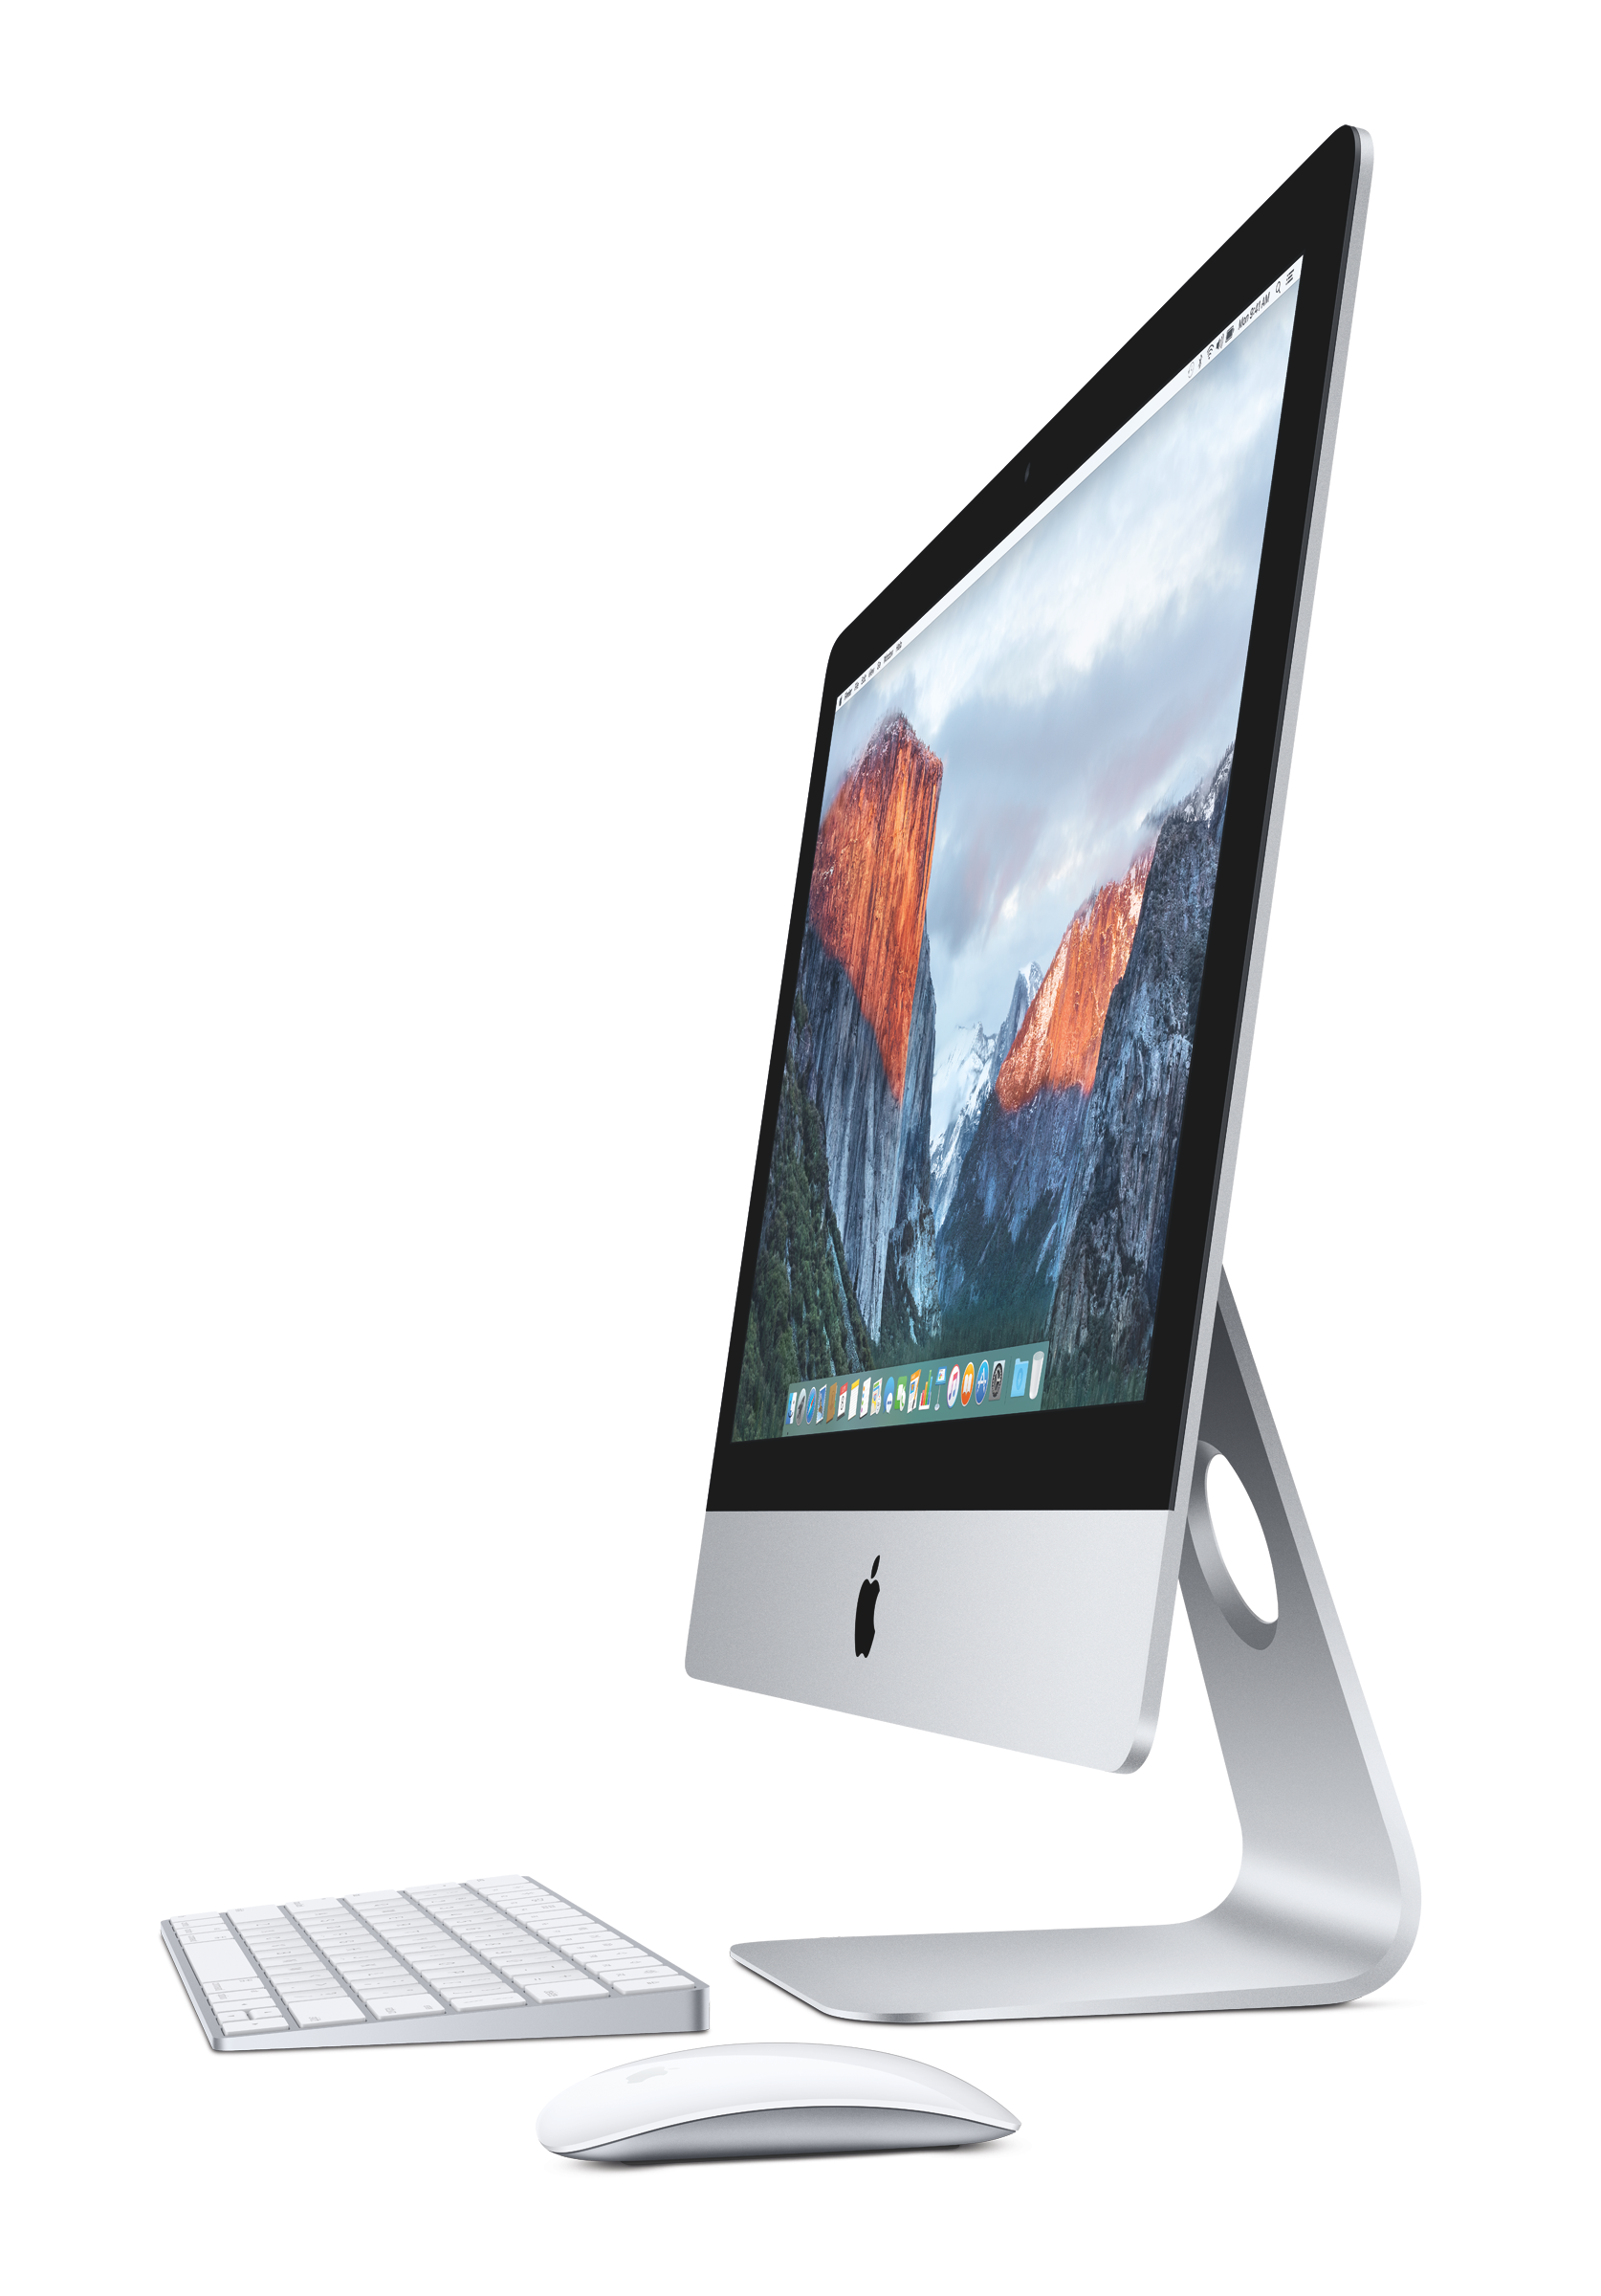 ホット製品 27インチ iMac 5K 304 A1419 デスクトップ型PC